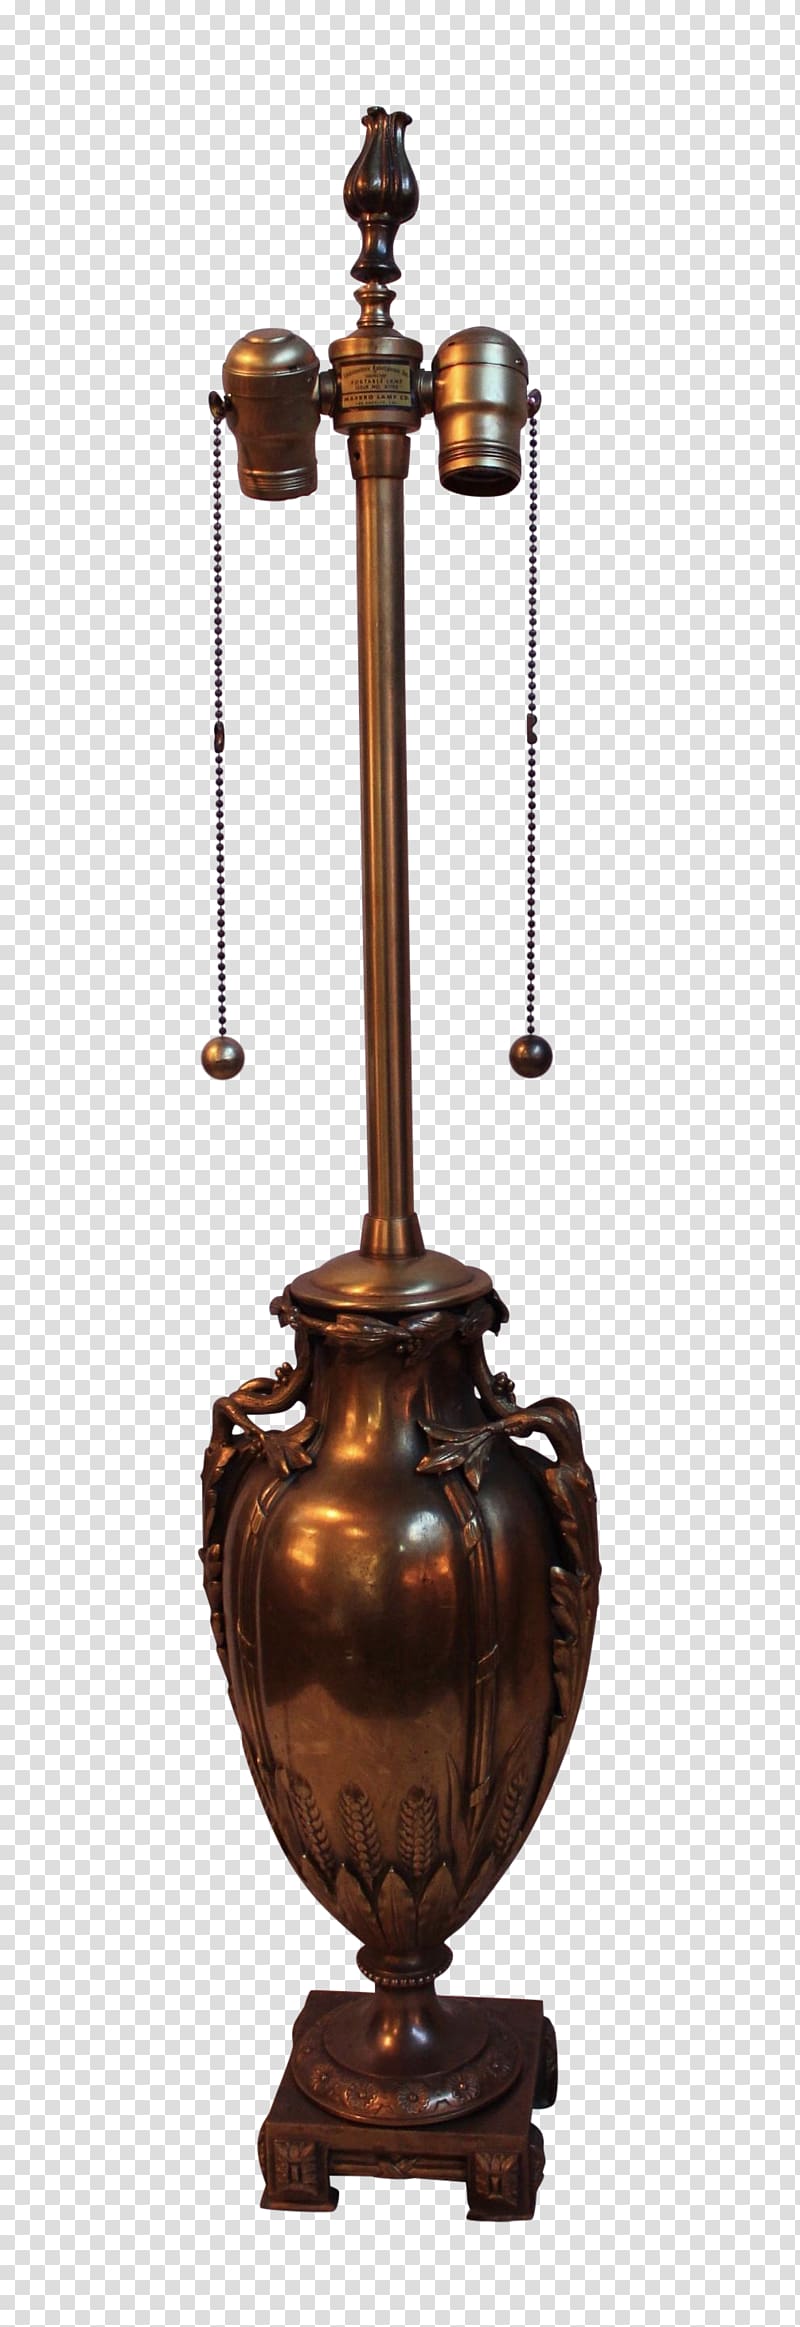 Copper Bronze Brass Light fixture, Brass transparent background PNG clipart